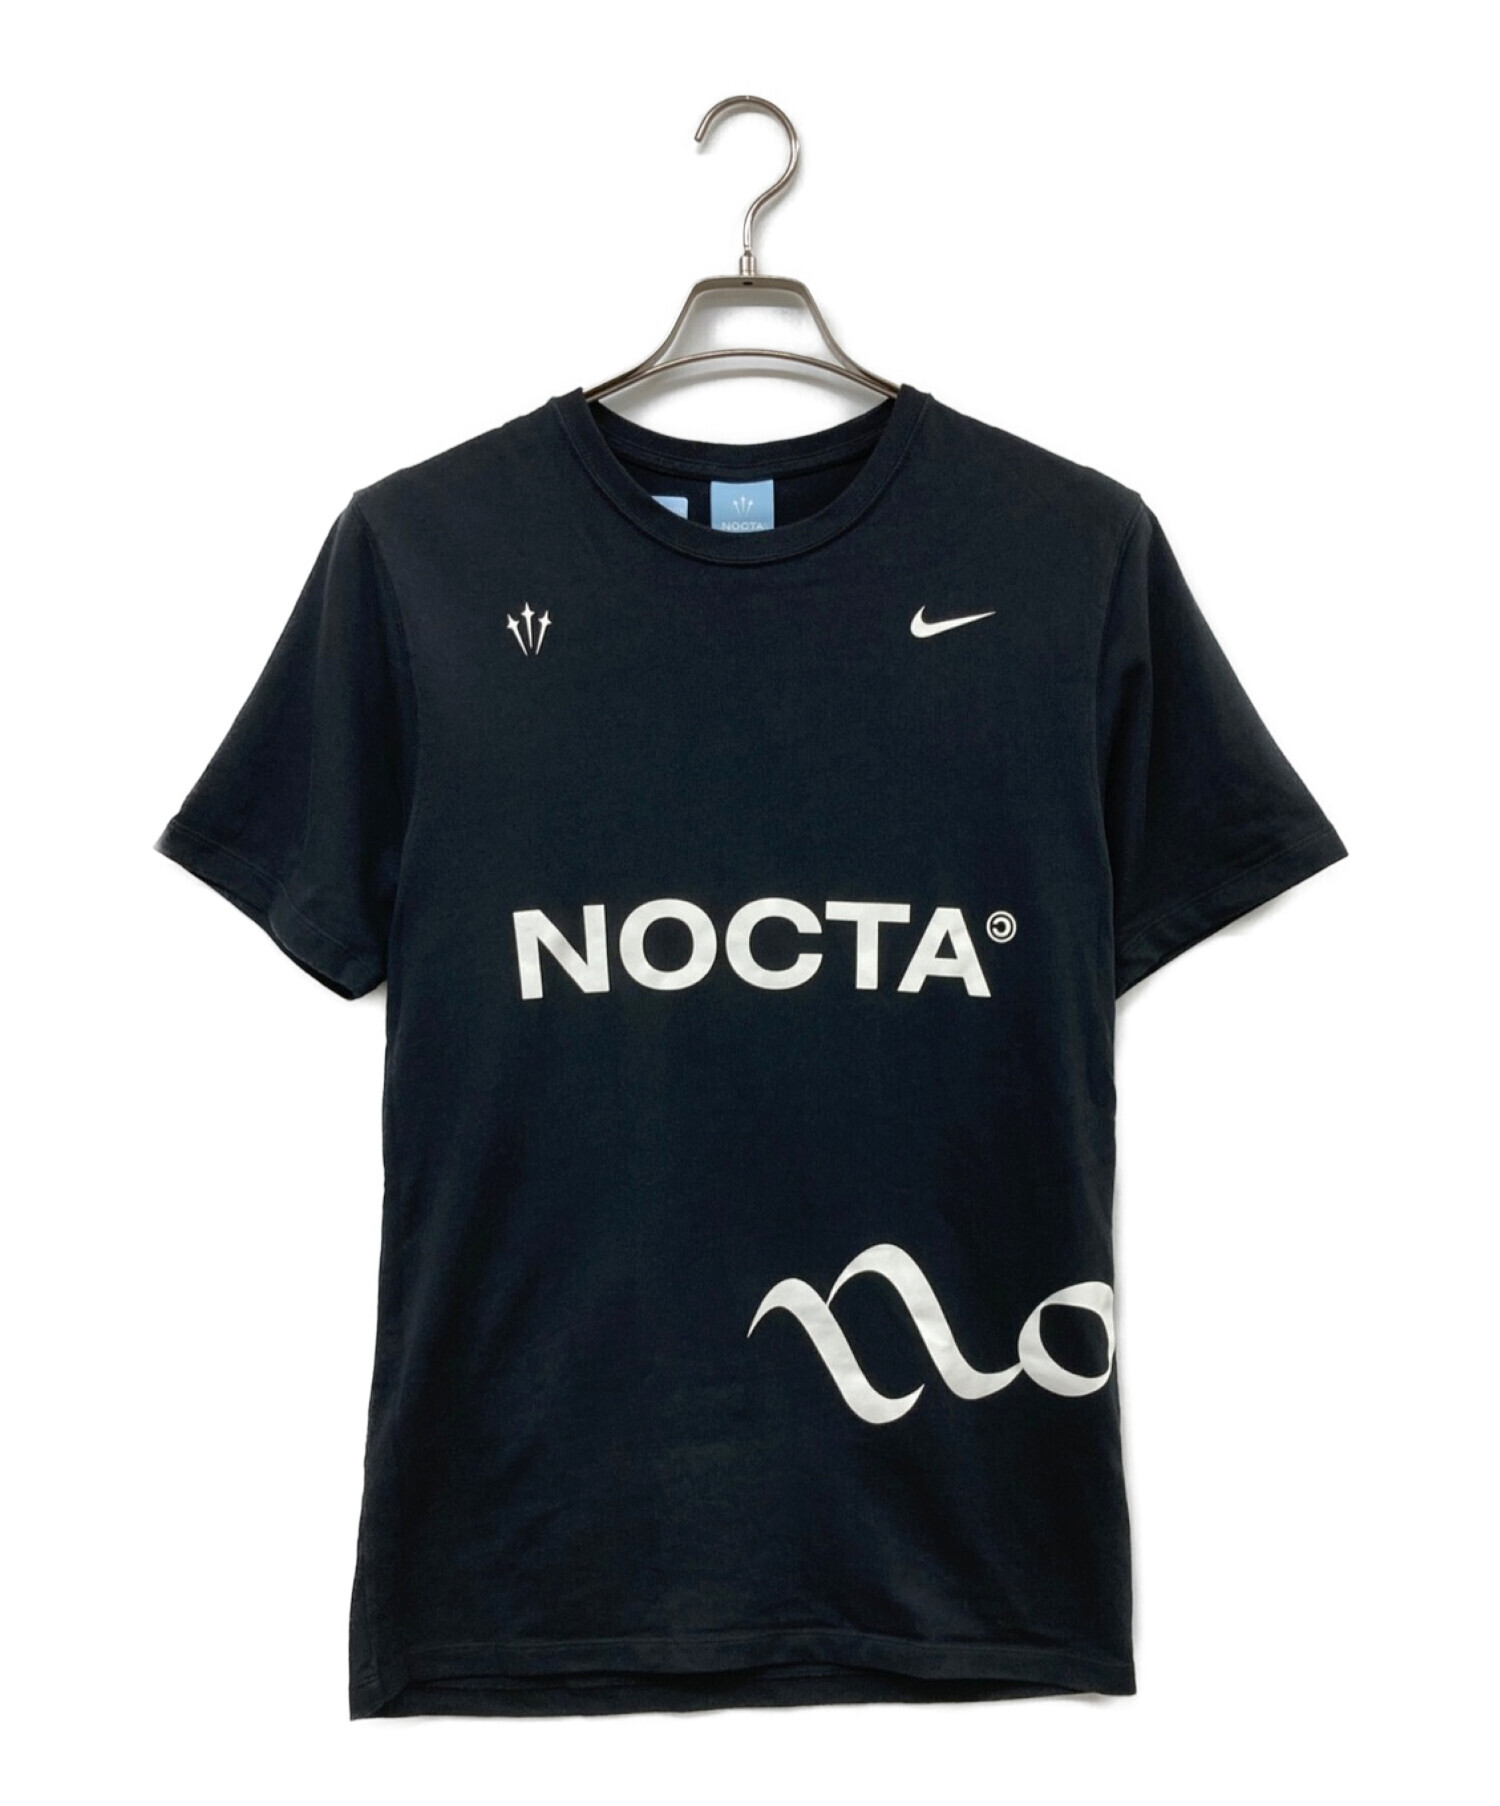 NIKE (ナイキ) NOCTA (ノクタ) コラボプリントTシャツ ブラック サイズ:S